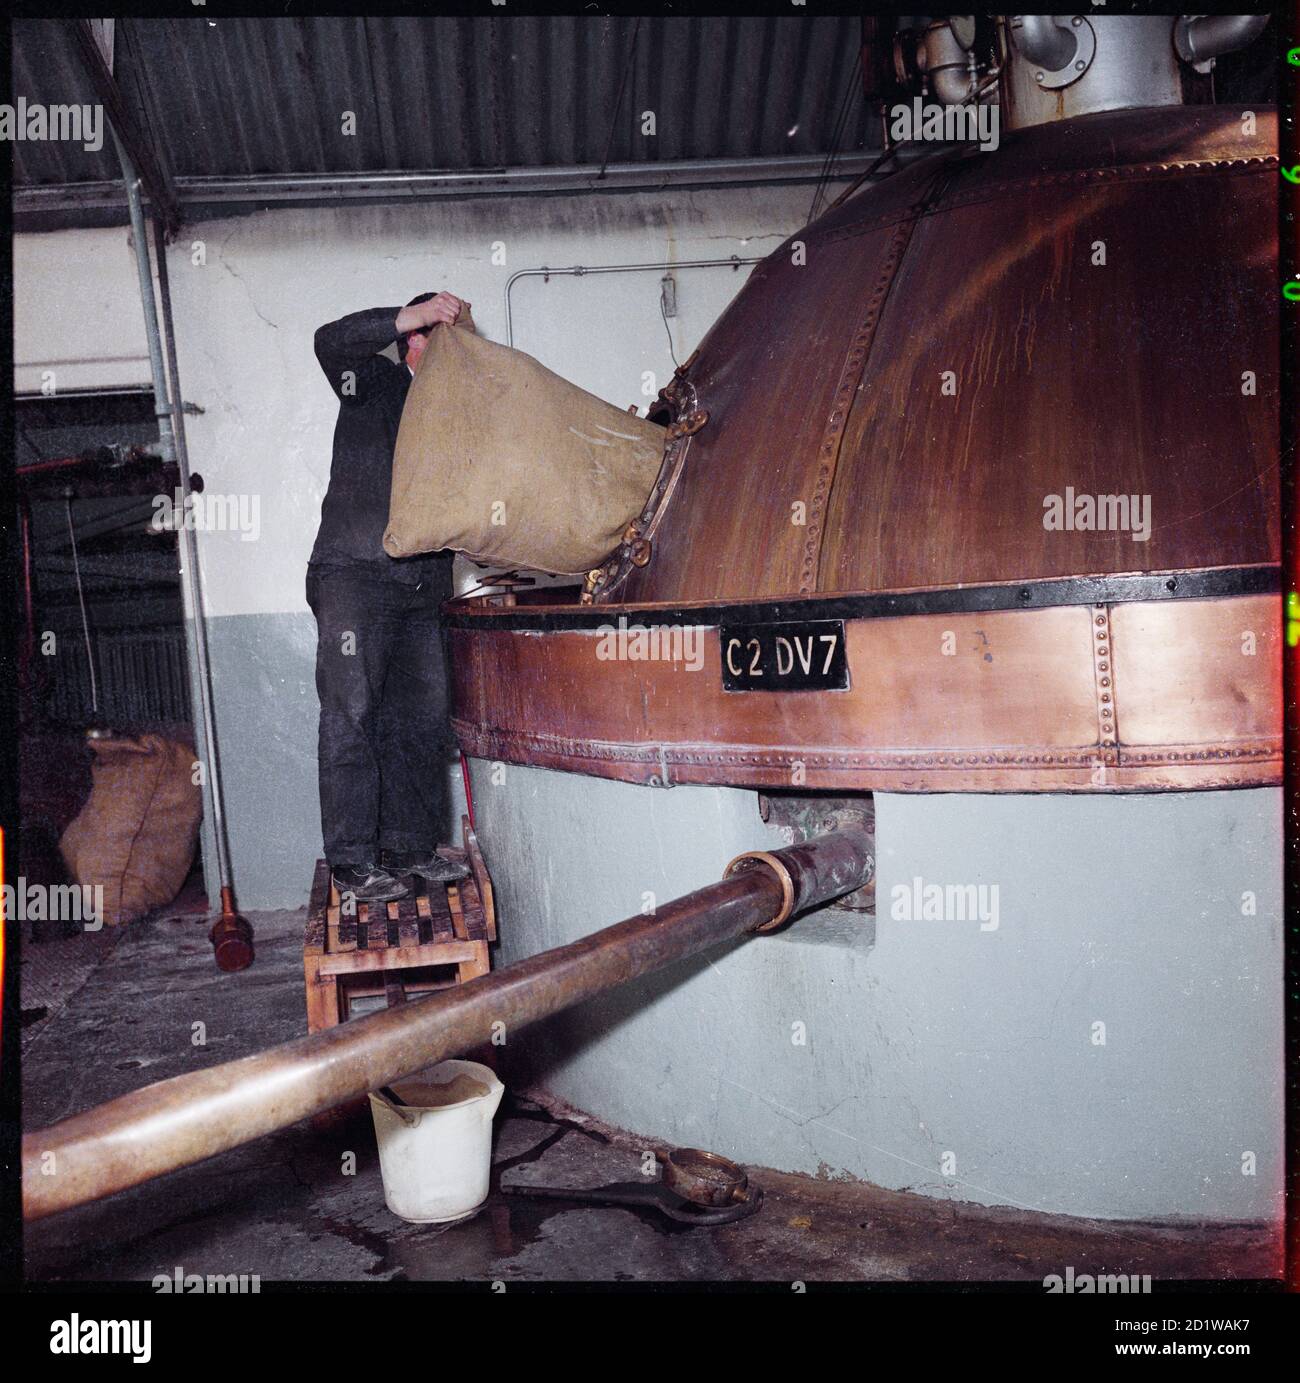 McMullen's Brewery, Hartham Lane, Hertford, Hertfordshire. El lúpulo se añade a una caldera de cobre (caldera de cerveza) en la cervecería Hertford de McMullen. Foto de stock